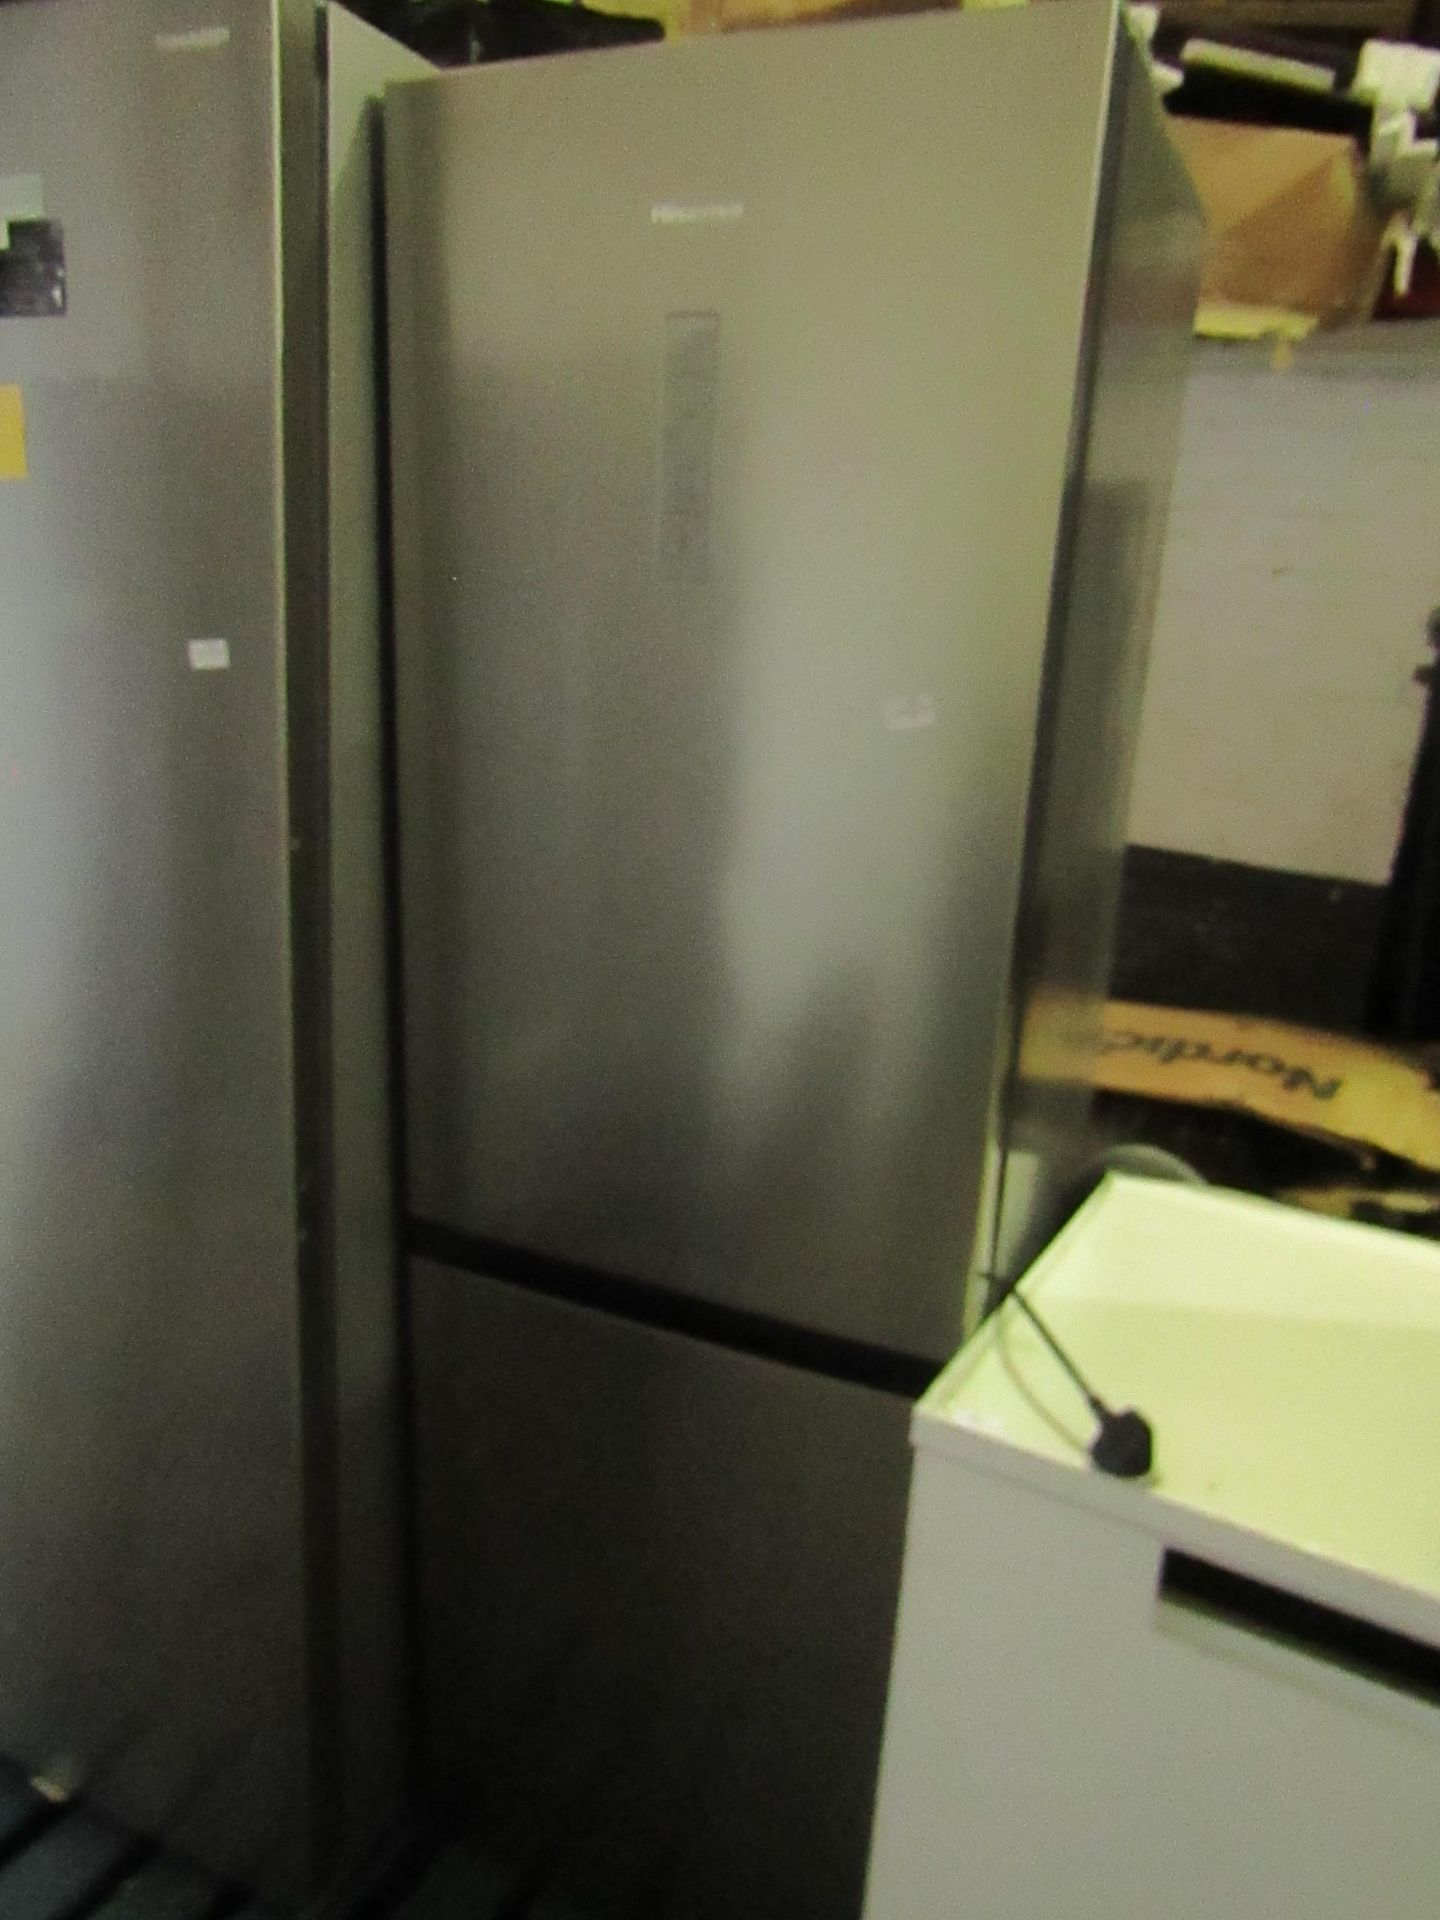 Hisense fridge freezer, untested due to damaged plug.